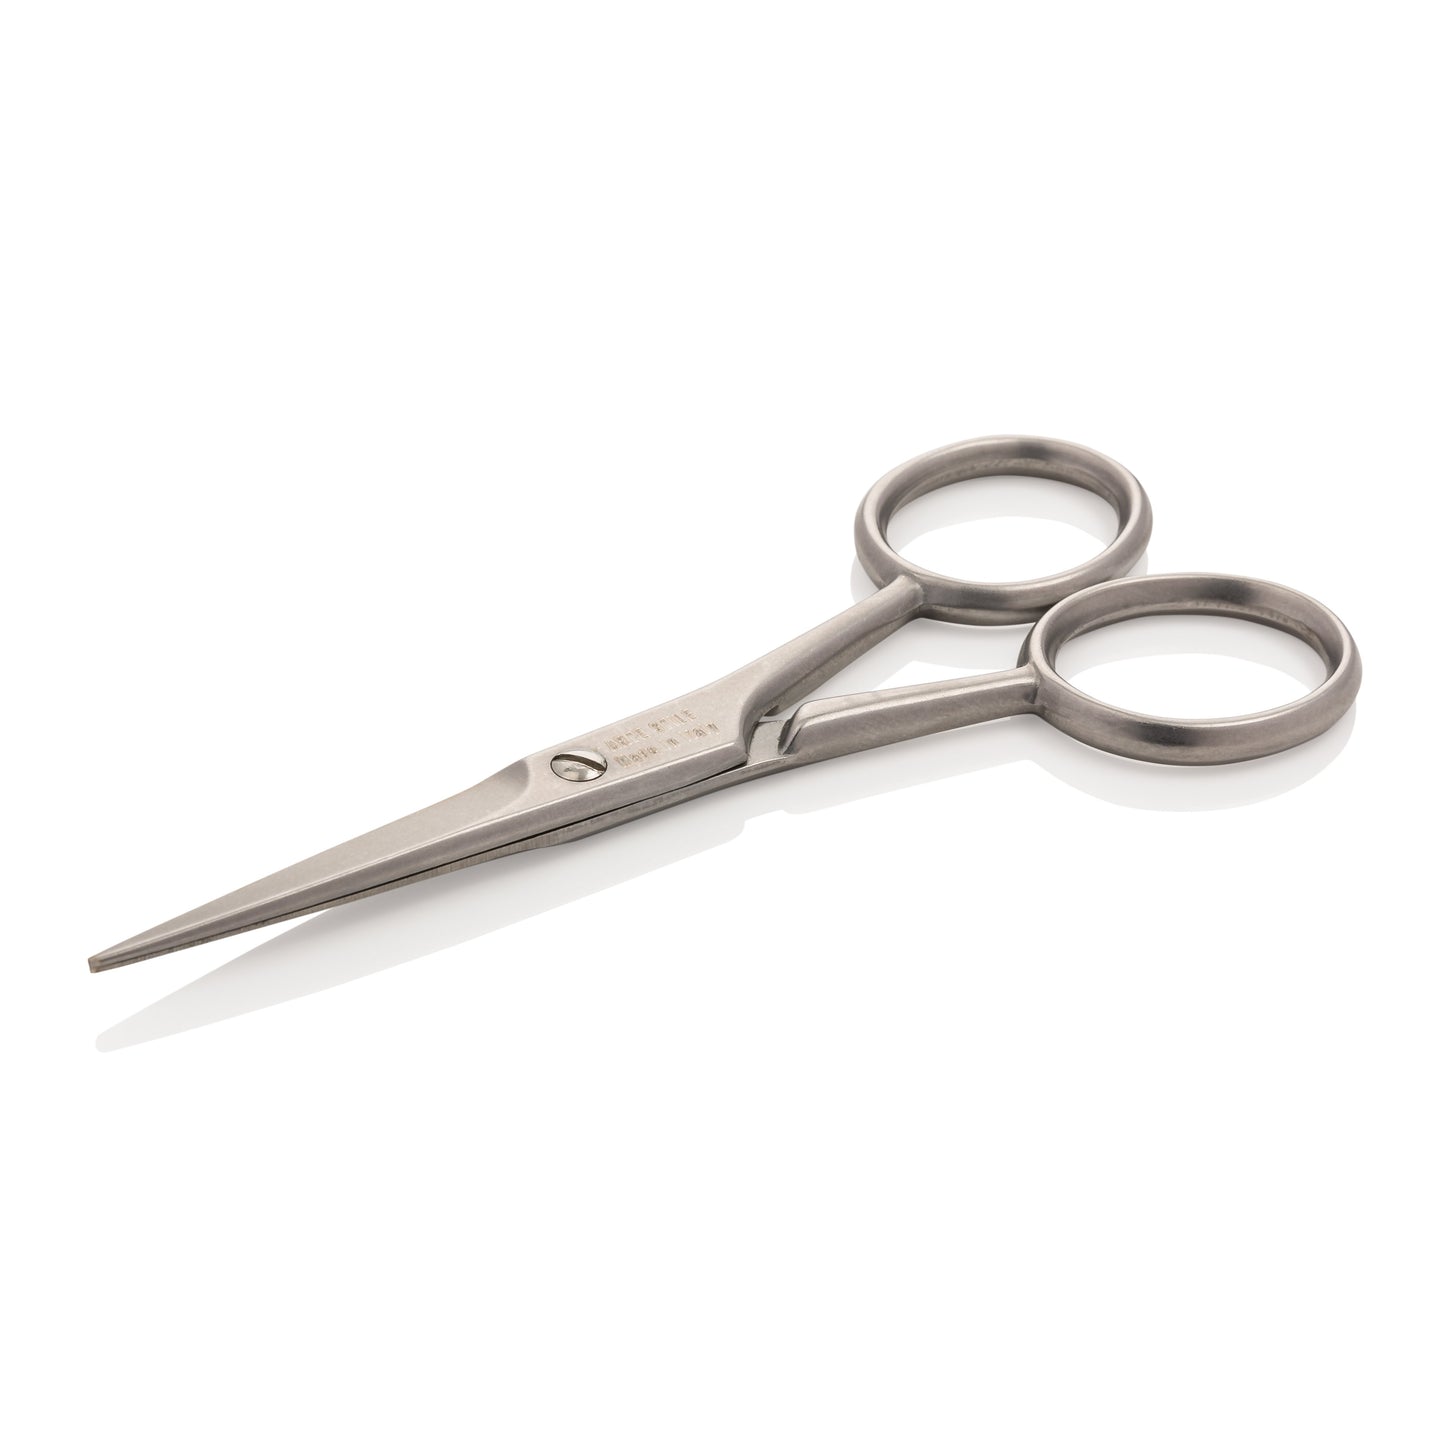 Scissors Tweezers, Diatech Beauty